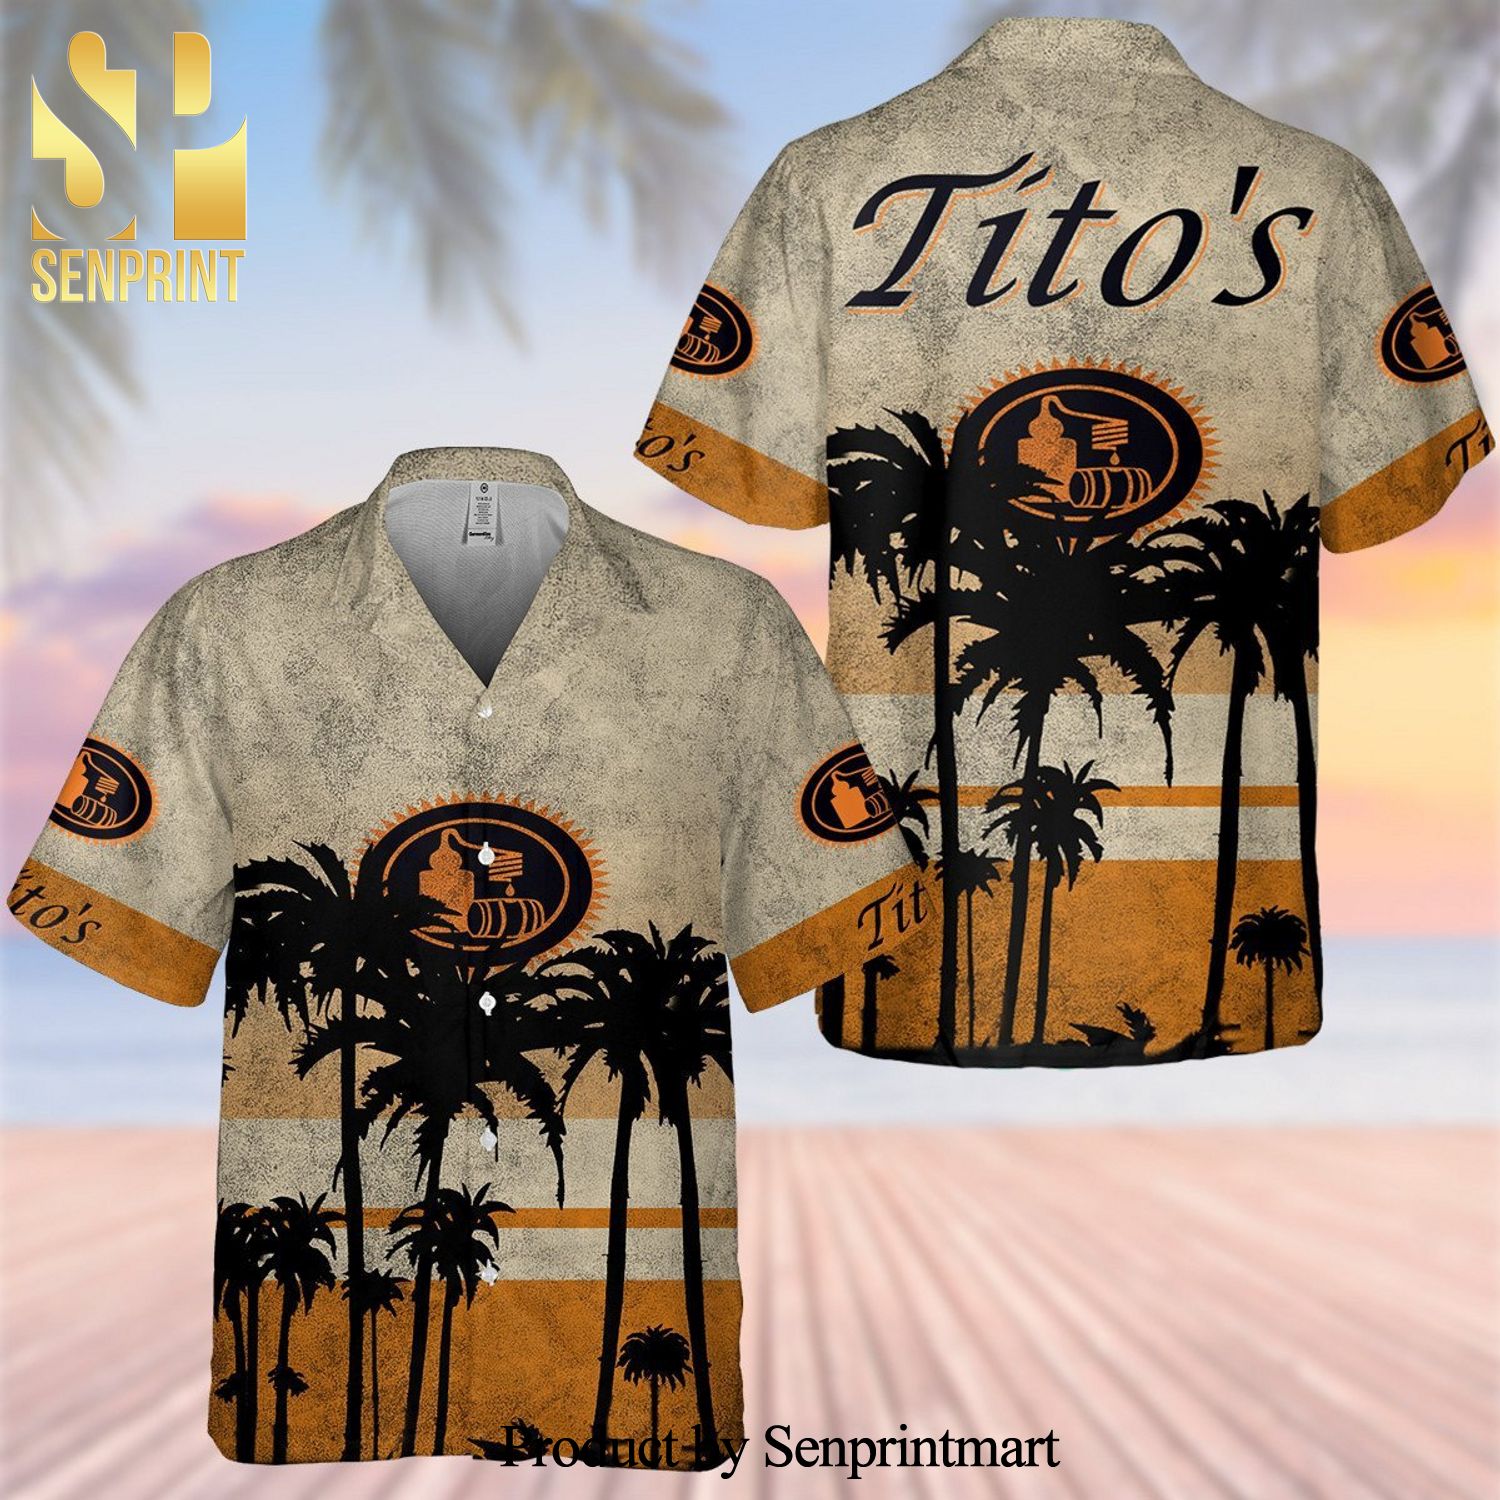 Tito’s Handmade Vodka For Fans Hawaiian Shirt